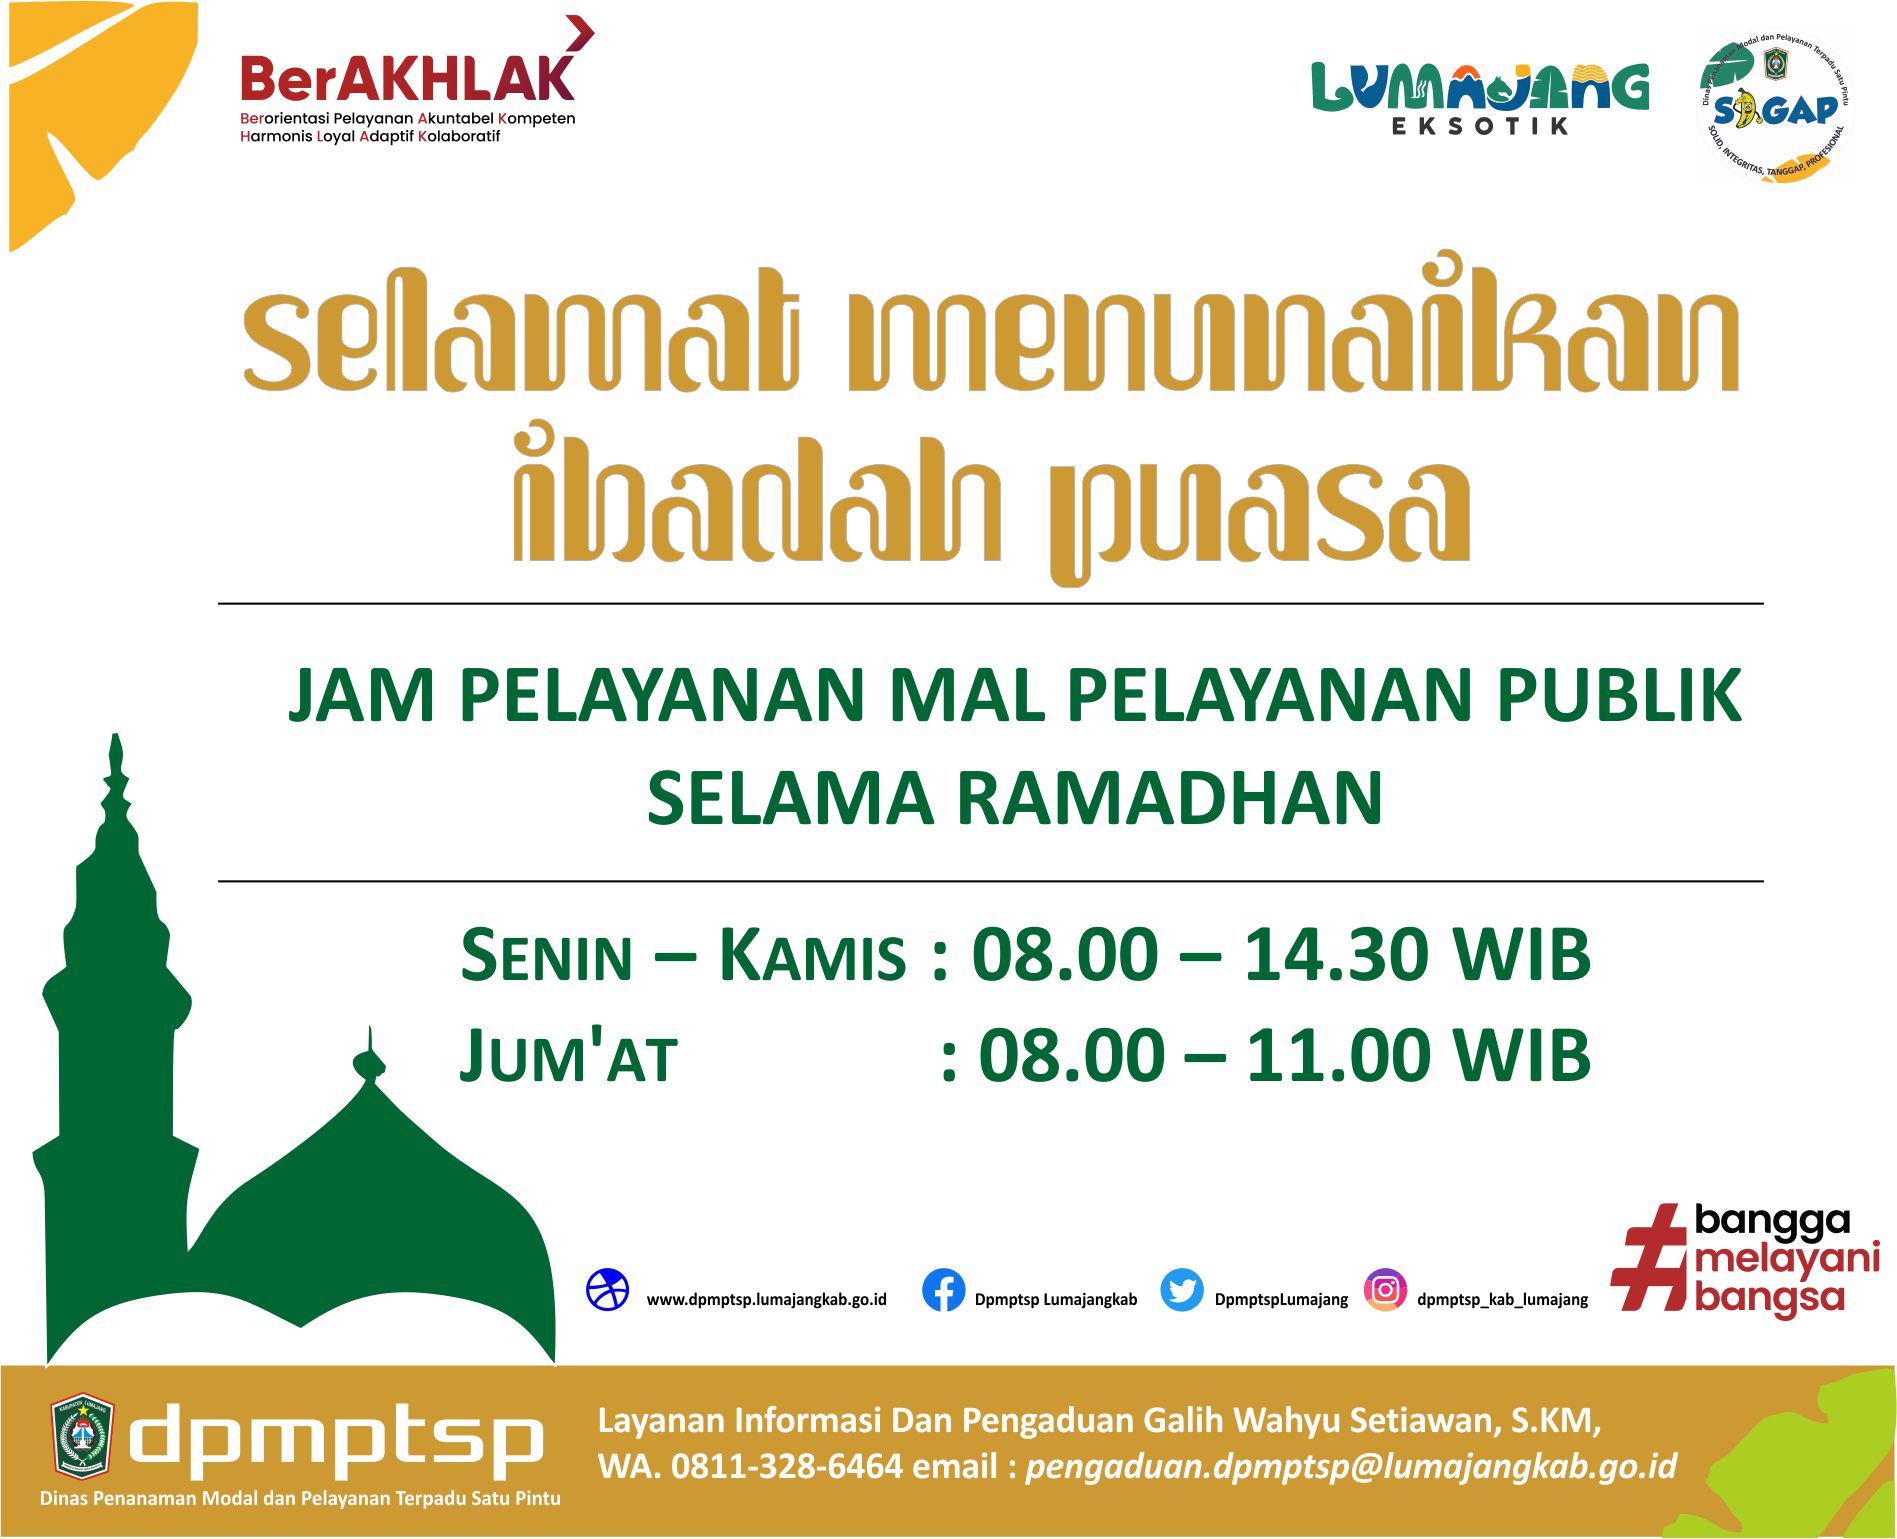 POJOK INFO : Jam Pelayanan Mal Pelayanan Publik Kabupaten Lumajang Selama Ramadhan